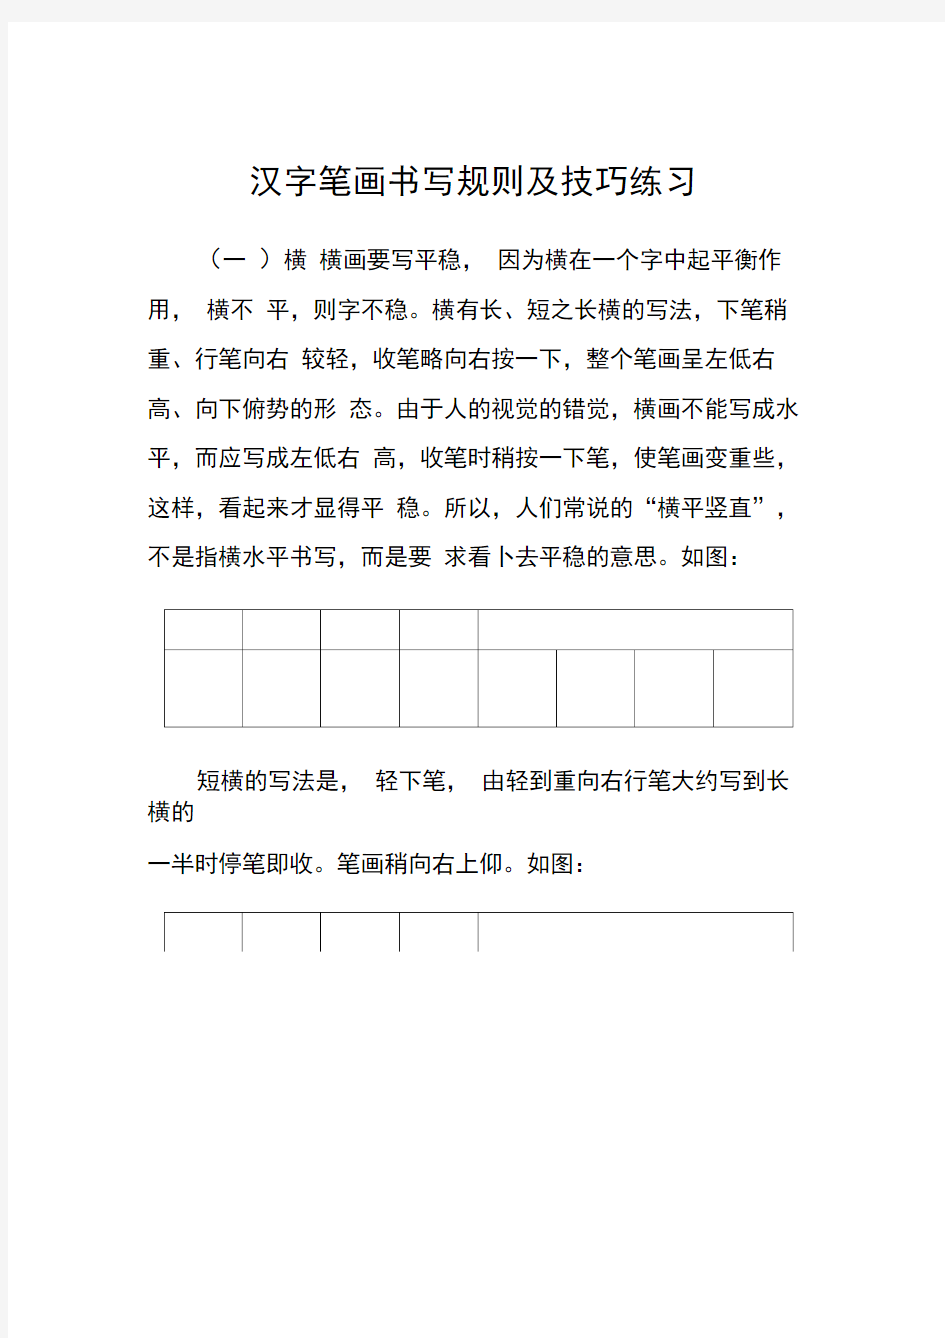 汉字笔画书写规则及技巧练习(28种基本笔画).